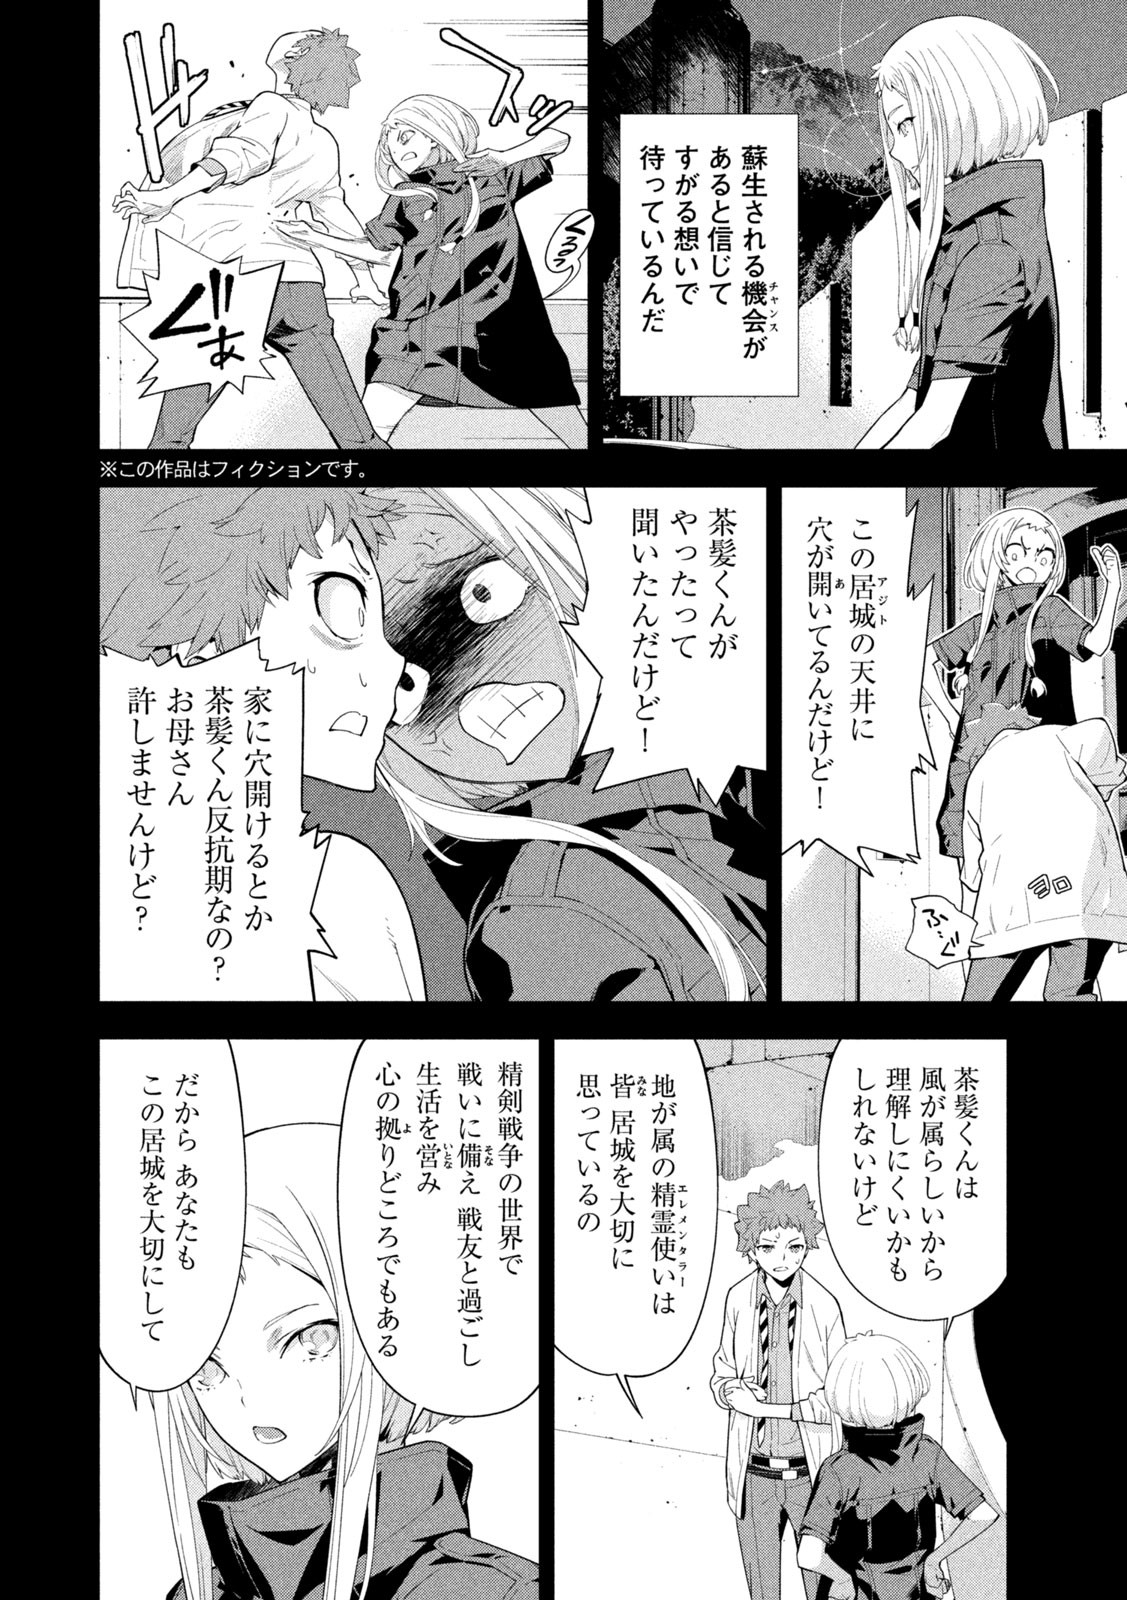 Seirei Tsukai – Chito no Jinshi - Chapter 24 - Page 2